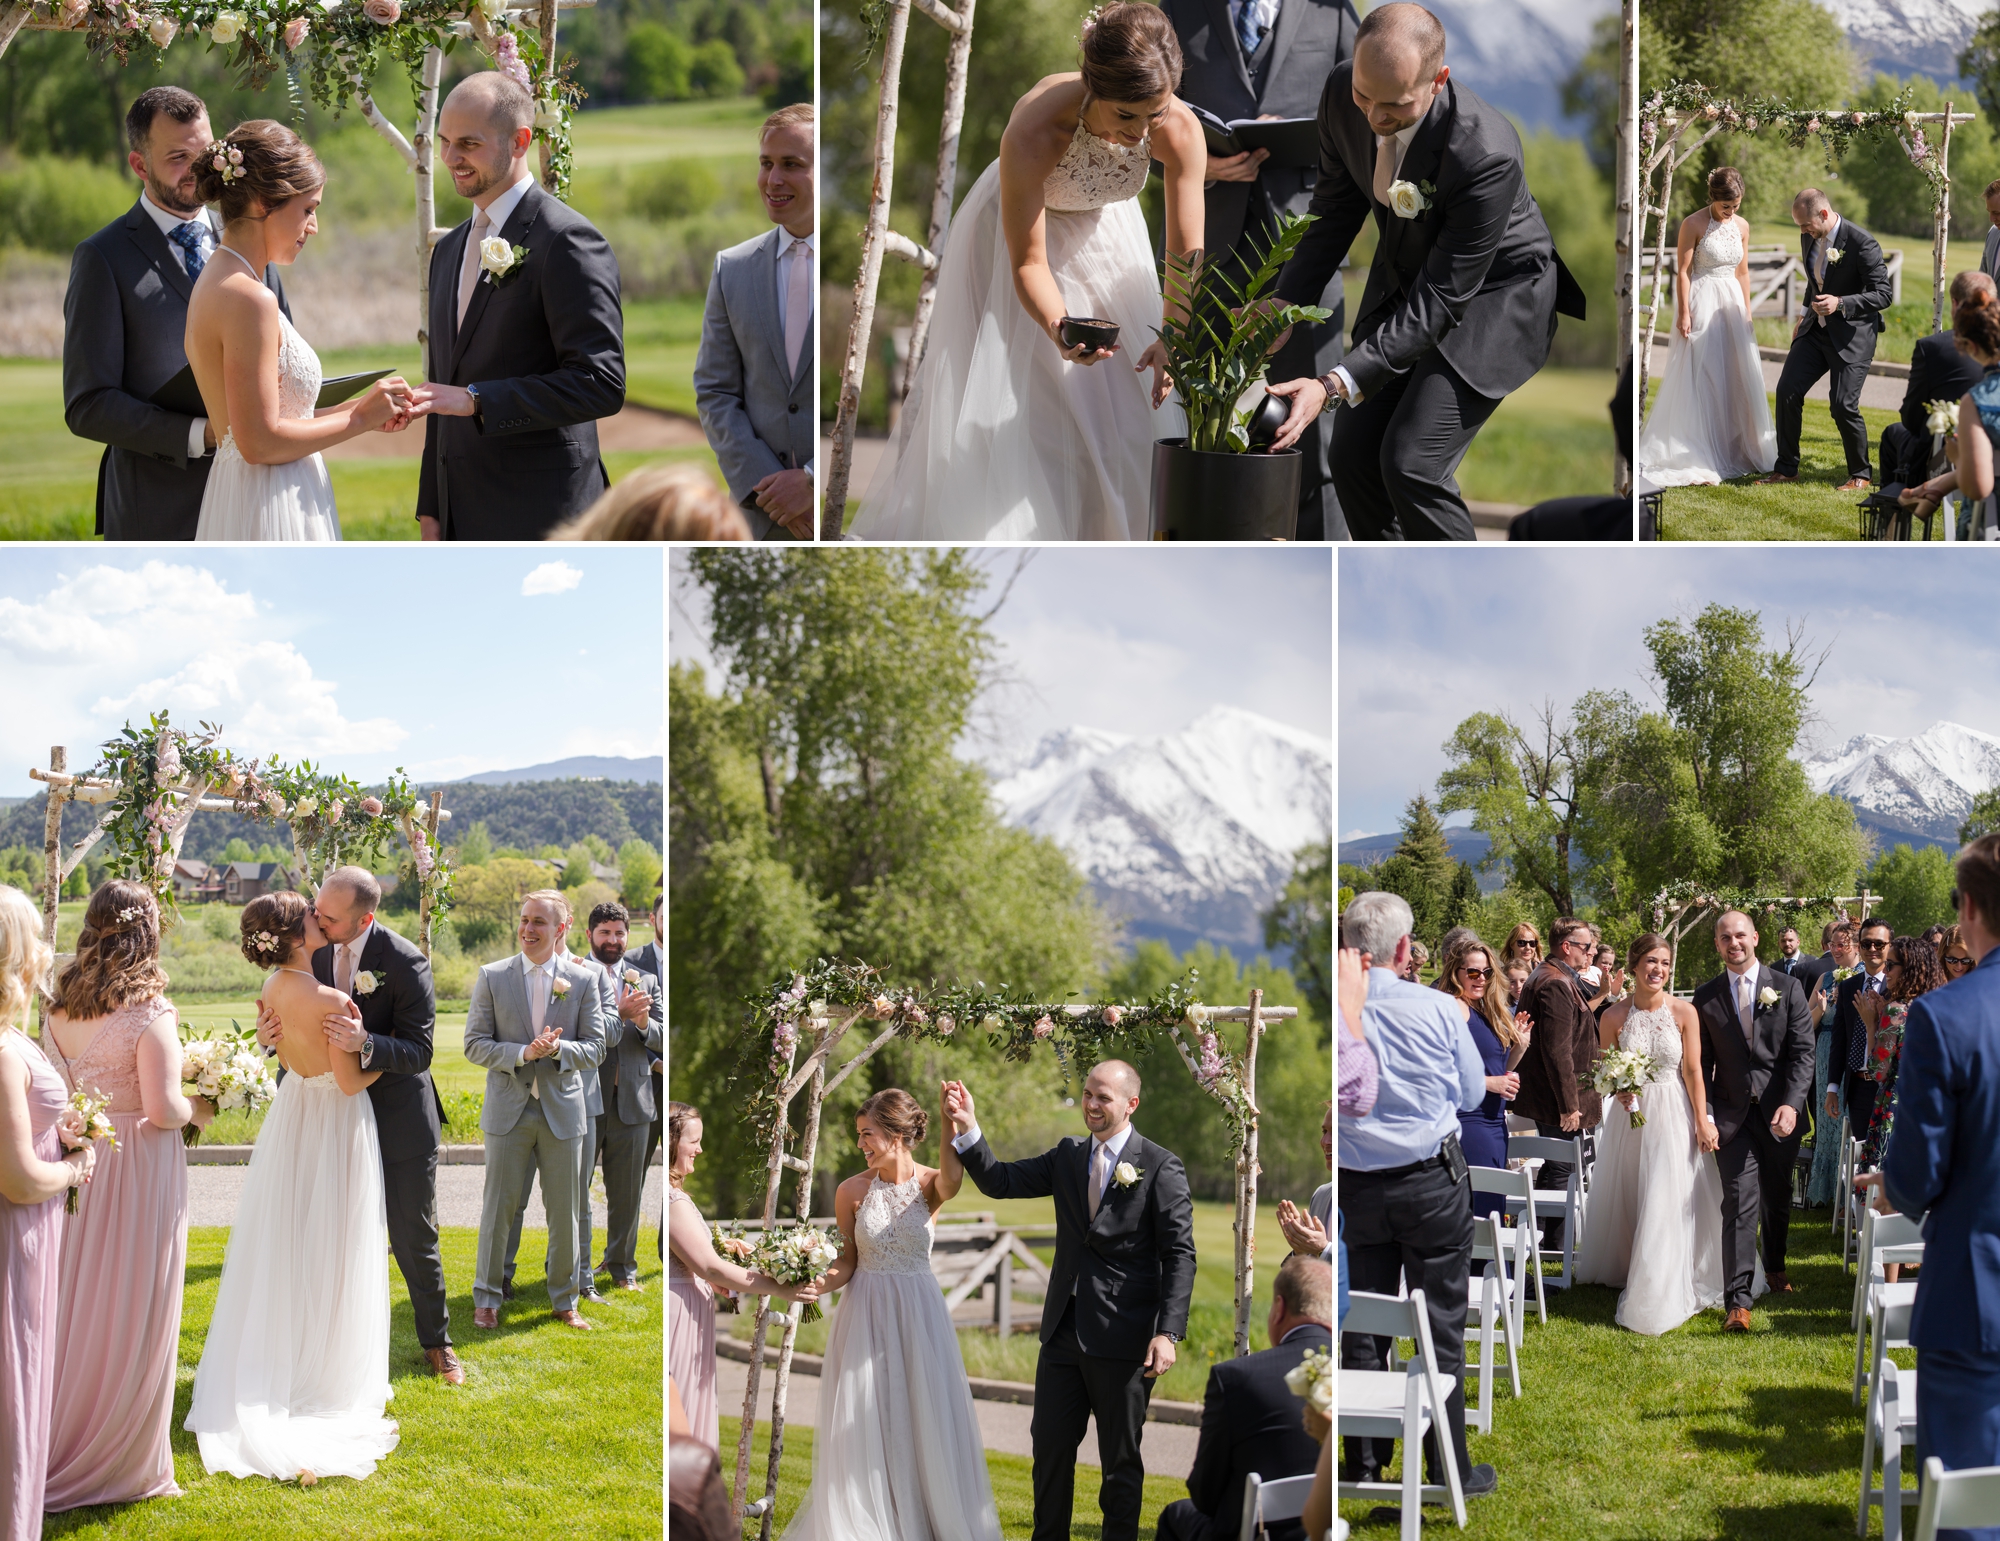 Jewish wedding ceremony in Rocky Mountains